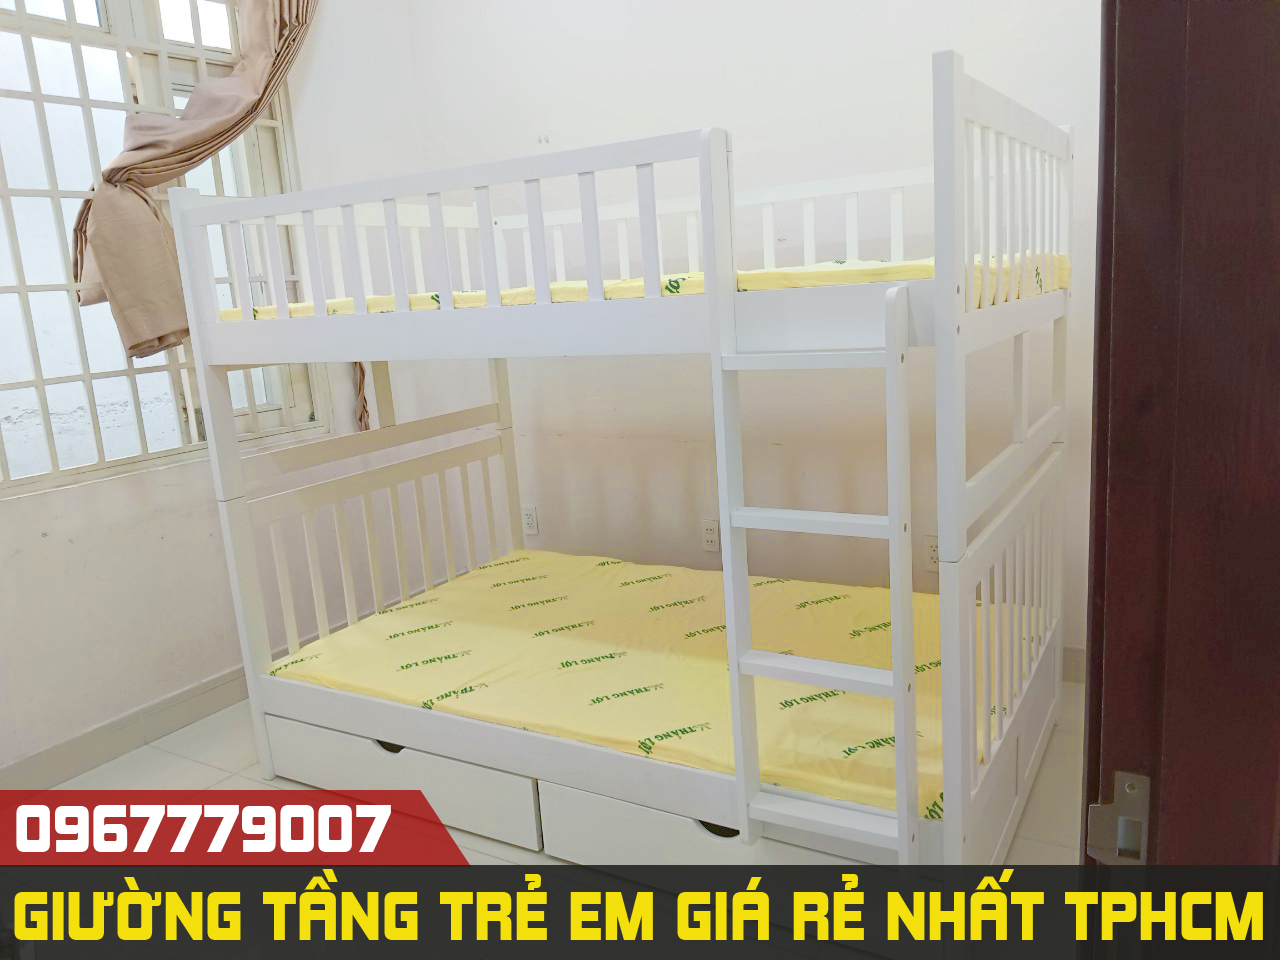 VIDEO Cận Cảnh Giường 2 Tầng Trẻ Em 1m2 Đẹp Giá Rẻ MS 013 tại TPHCM